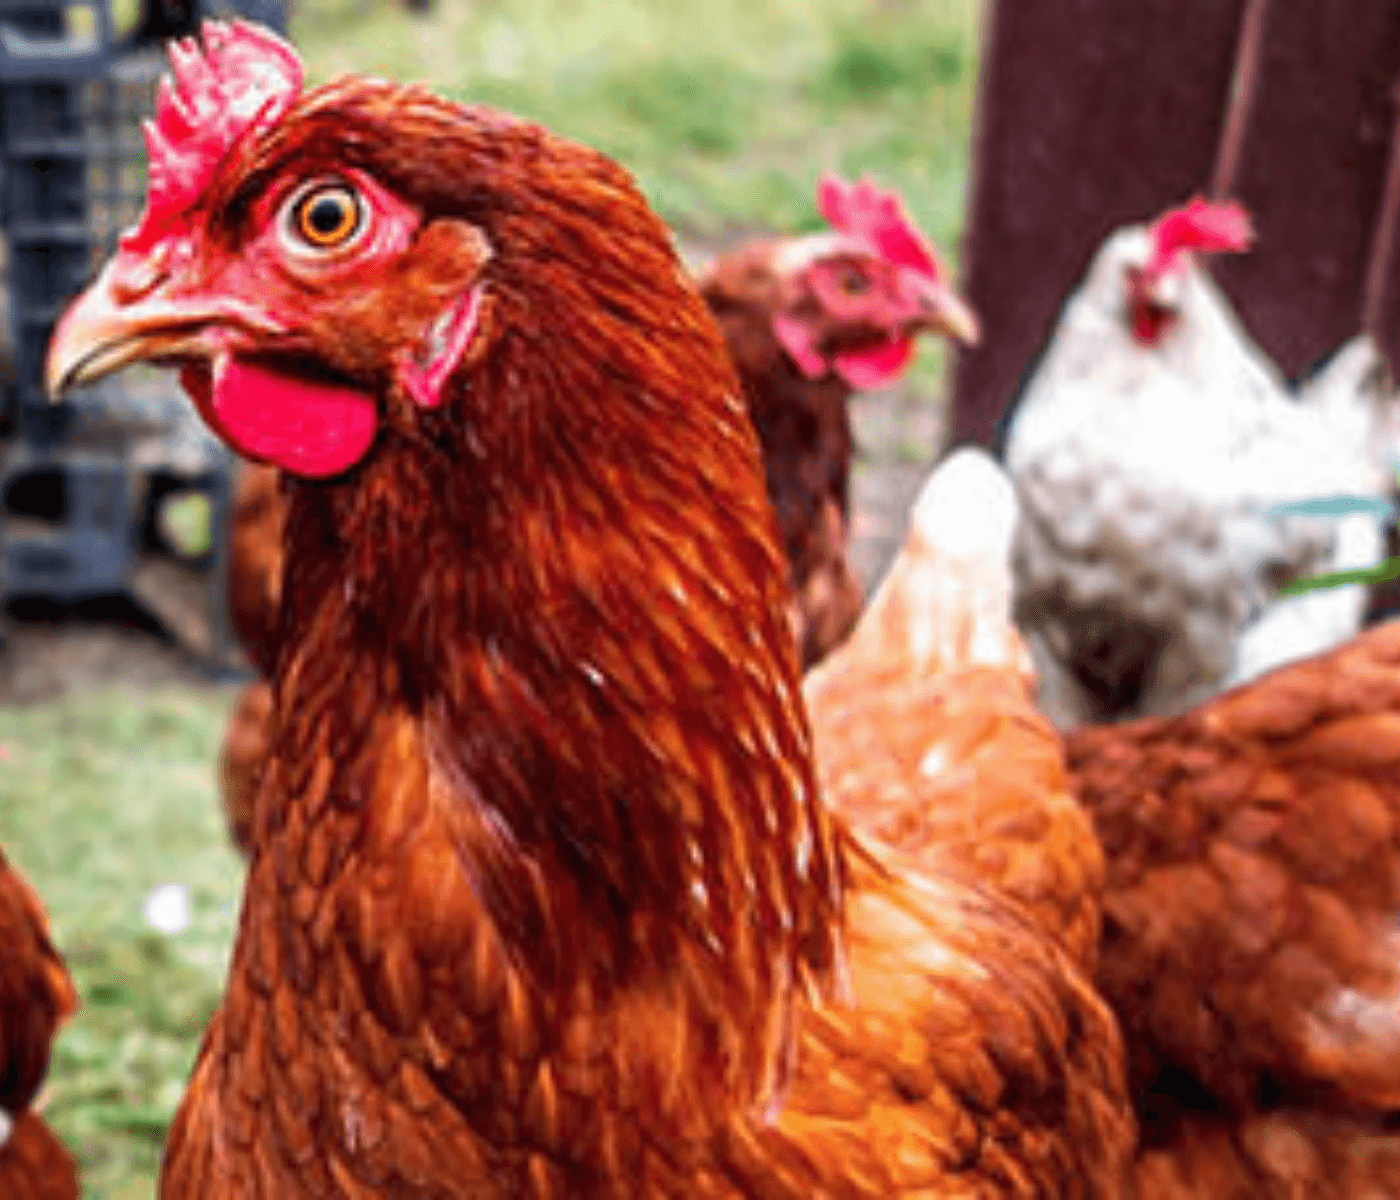 Caso humano de infecção por influenza aviária (H5N1) é relatado...